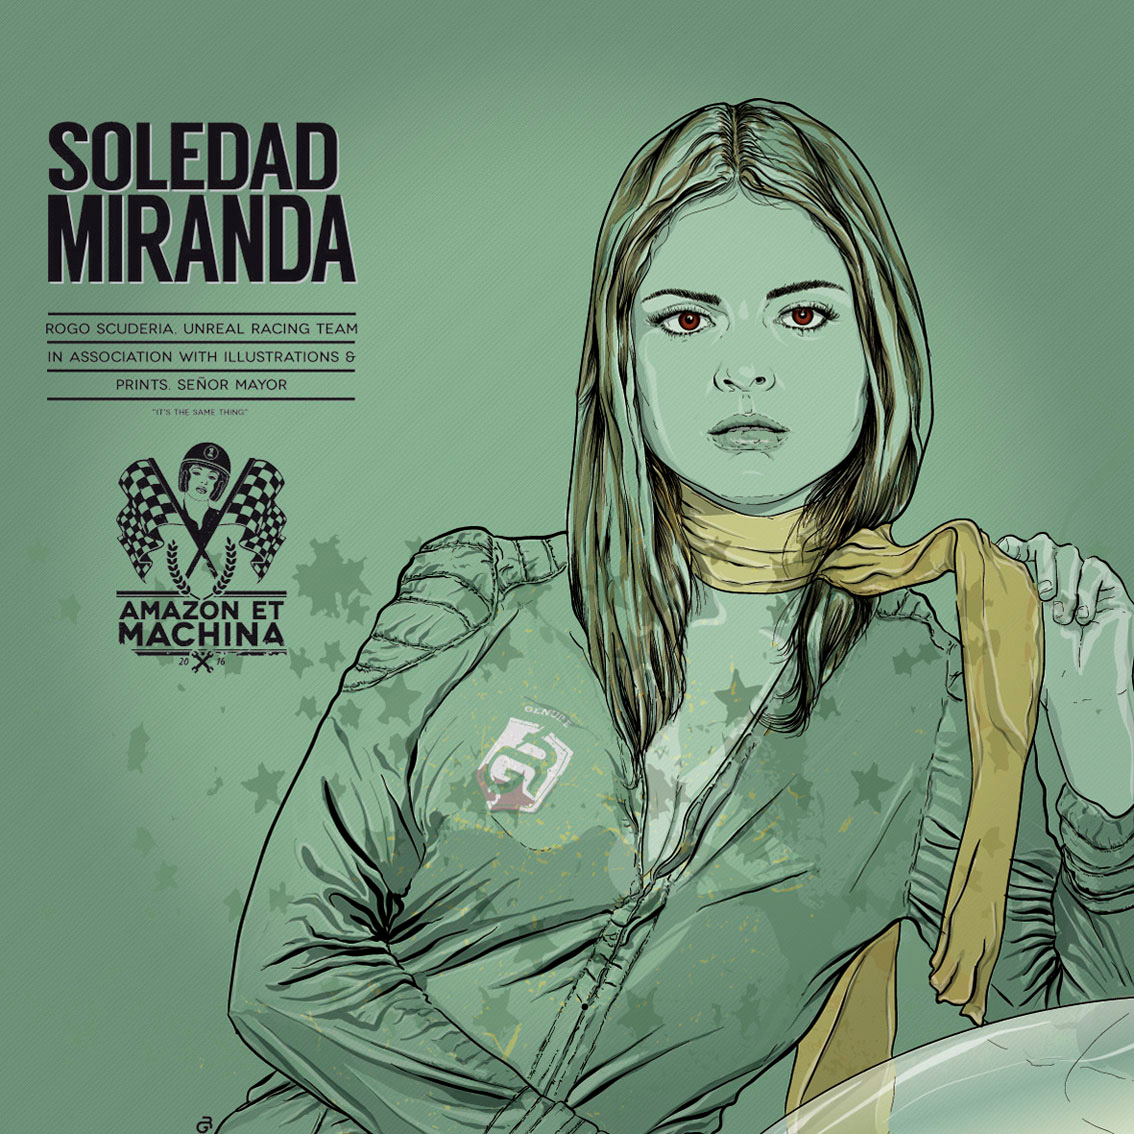 Lámina del Retrato de Soledad Miranda para Amazon et Machina.